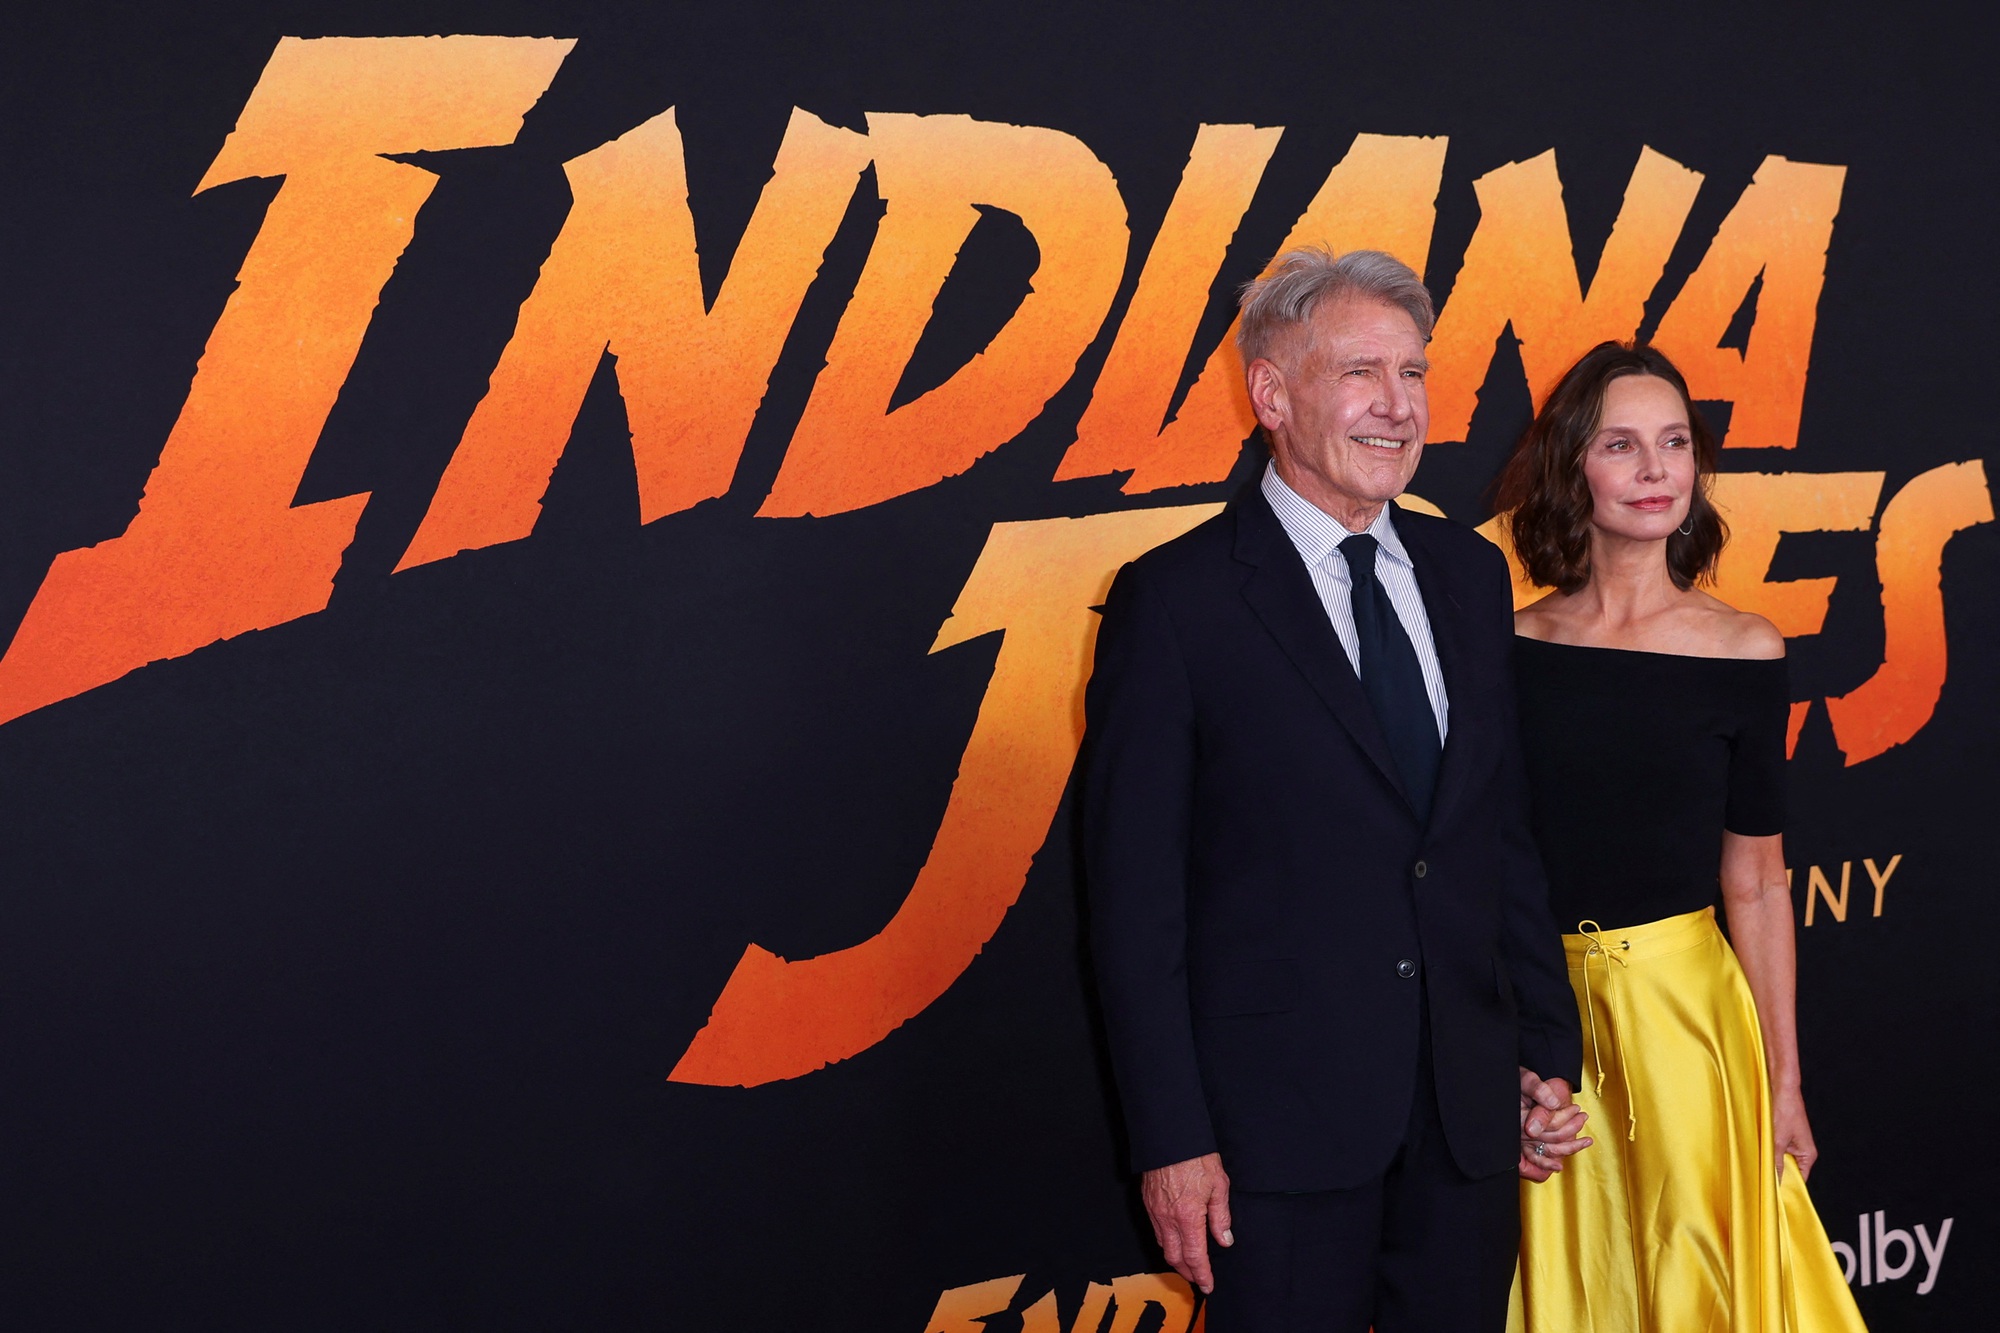 Ở tuổi 80, Harrison Ford vẫn sánh đôi cùng vợ trên thảm đỏ - Ảnh 2.